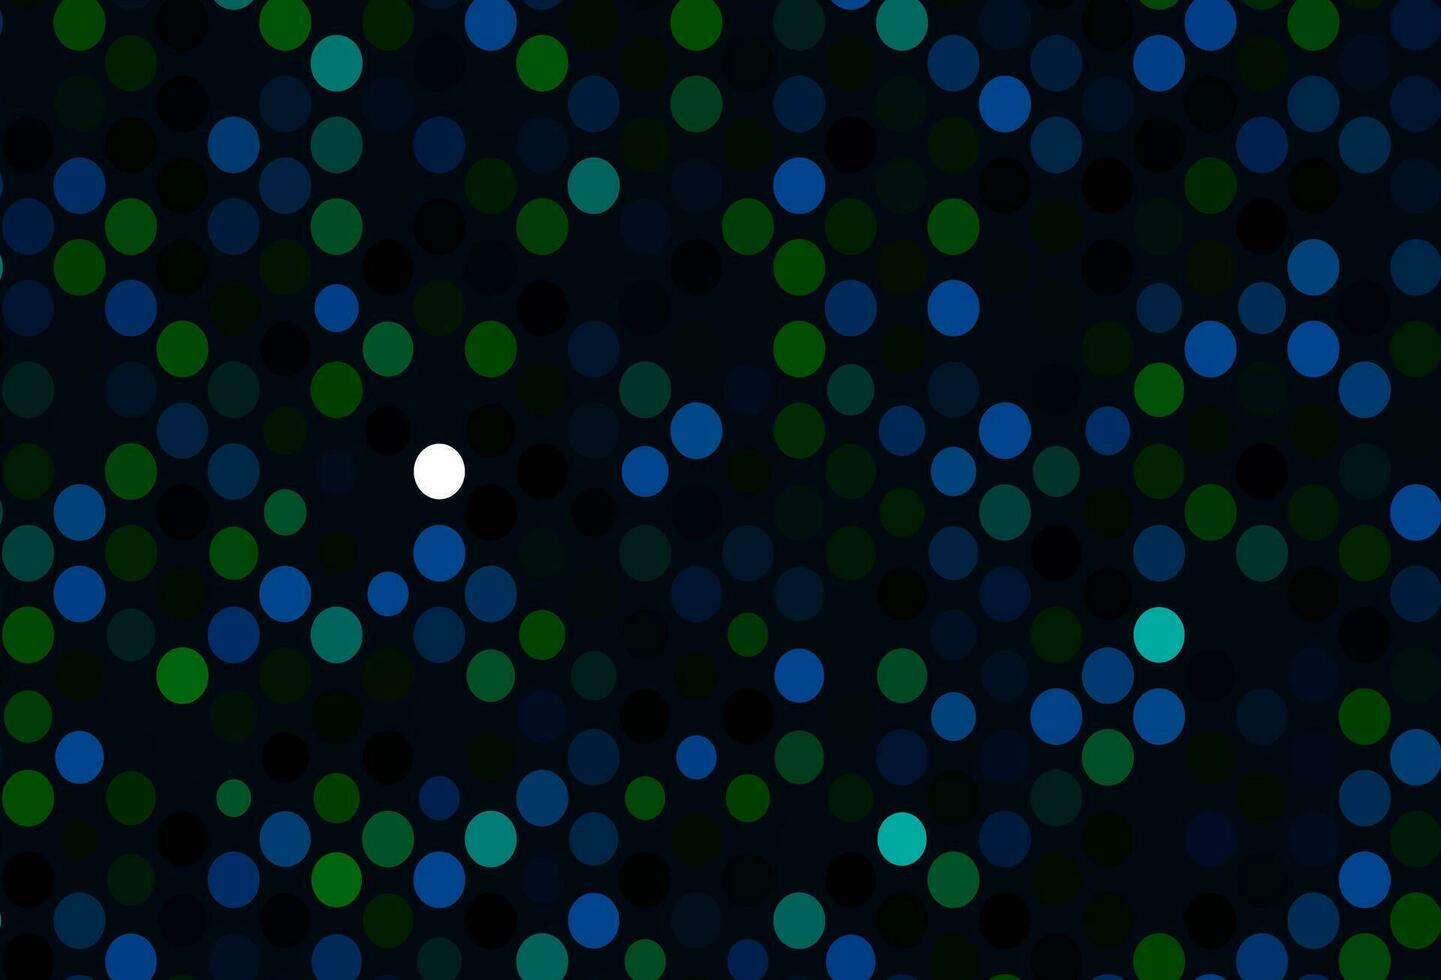 padrão de vetor azul e verde escuro com esferas.